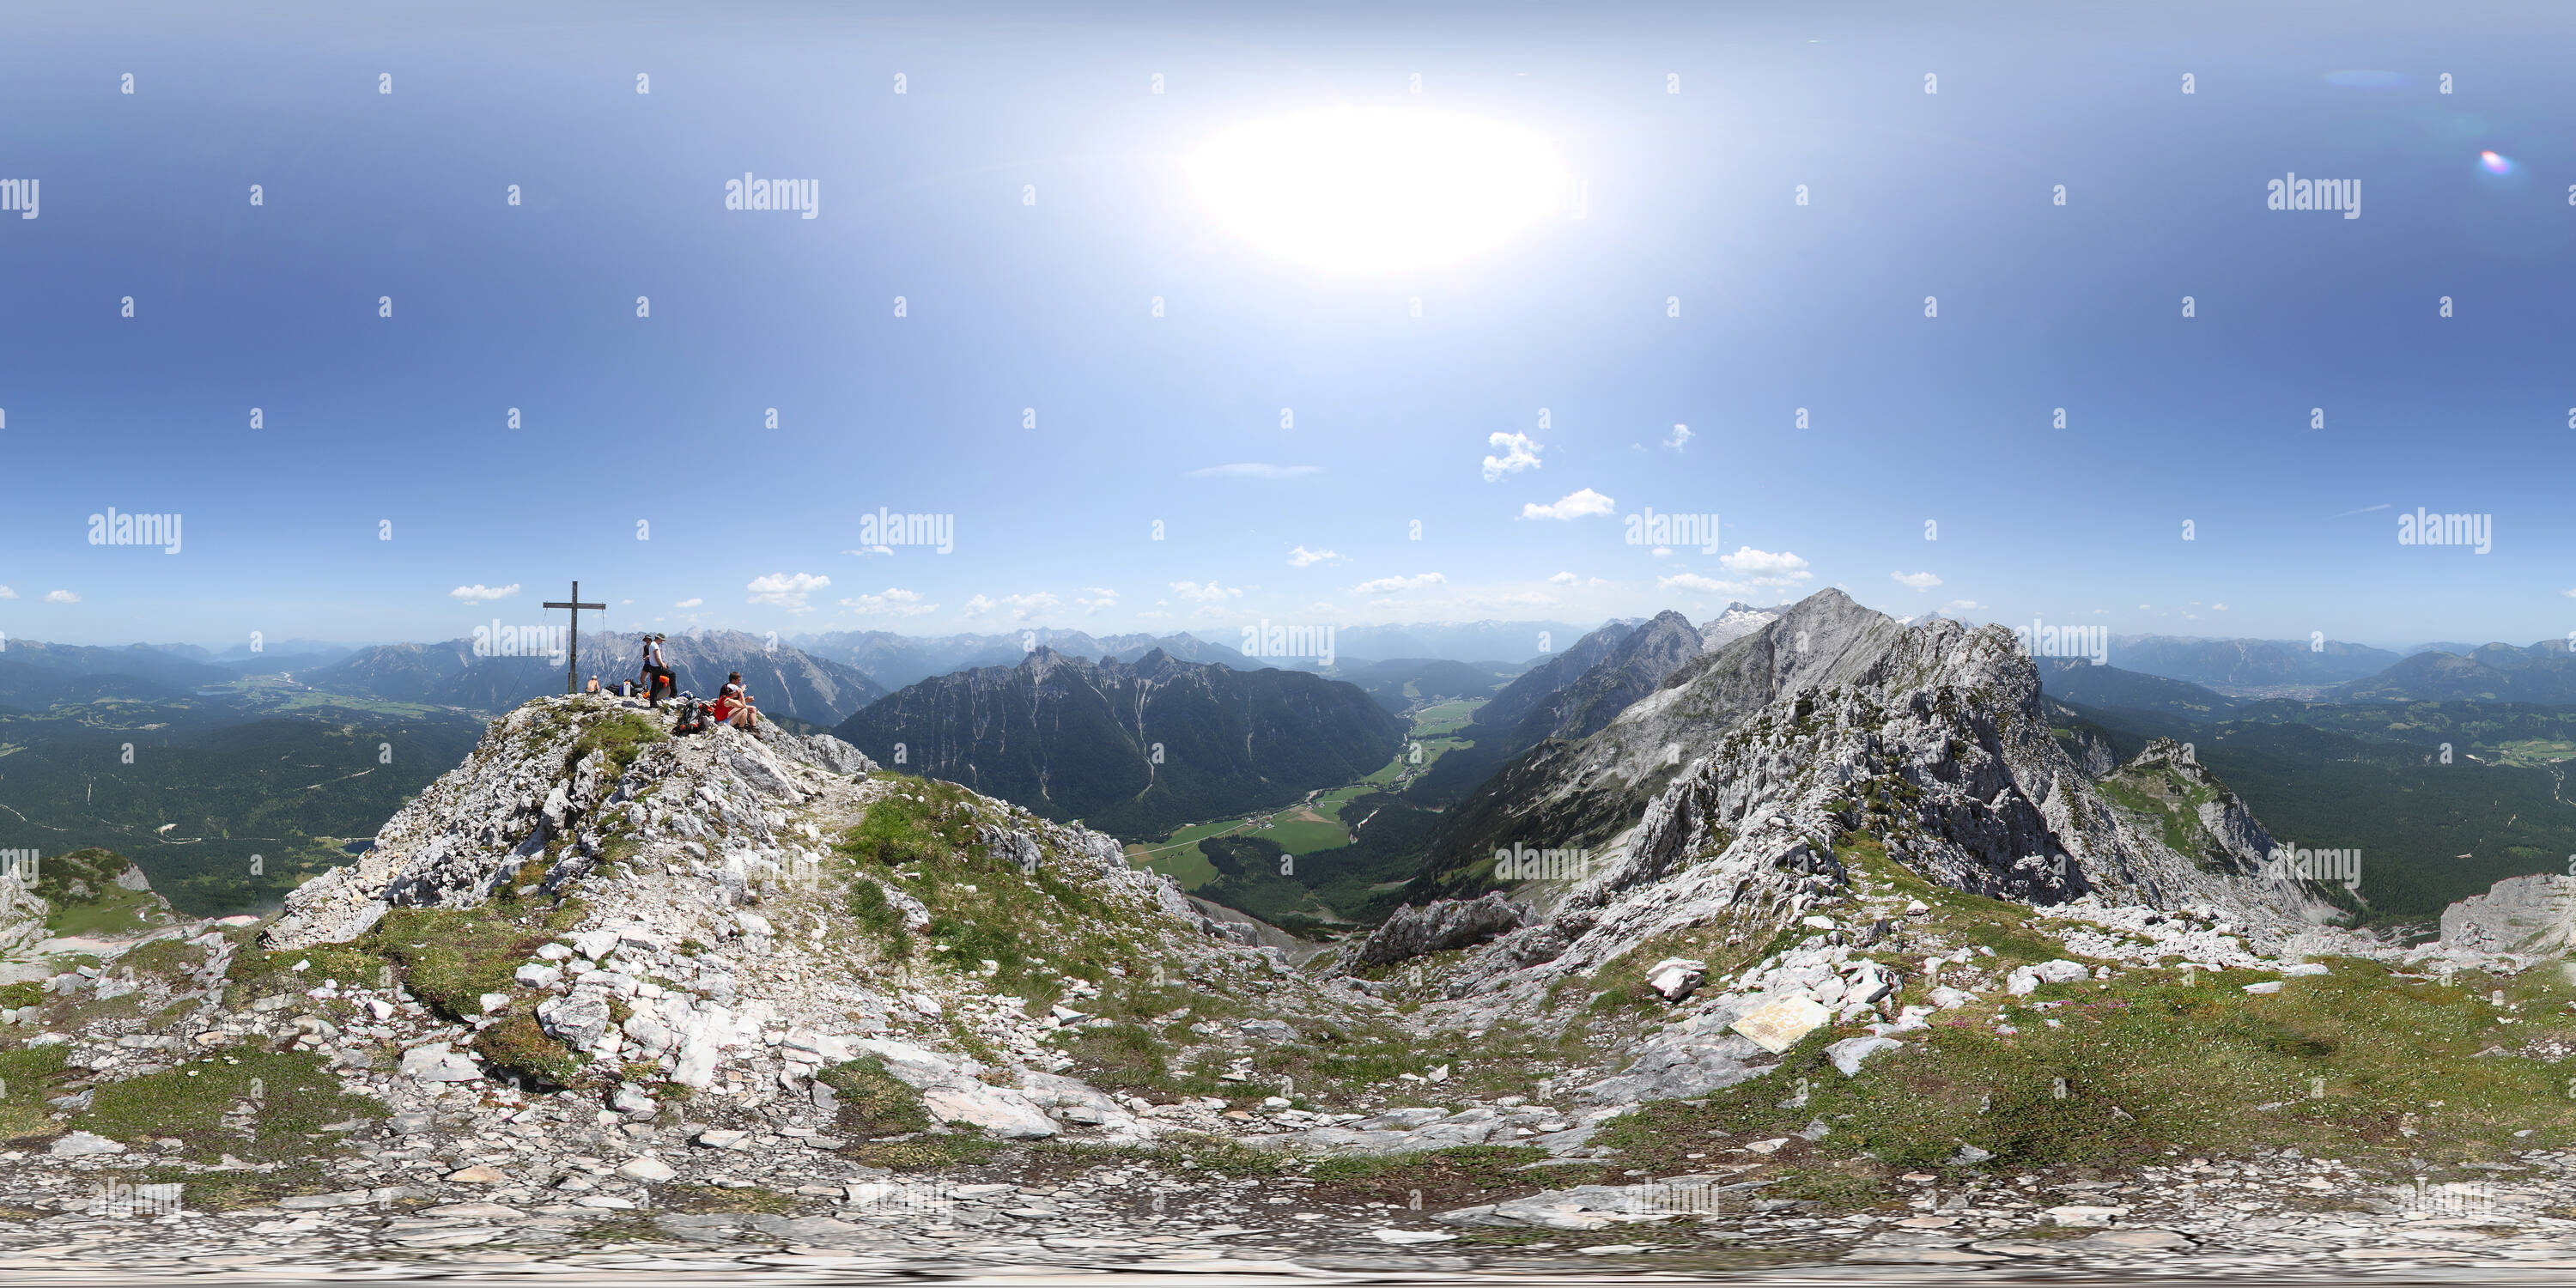 Visualizzazione panoramica a 360 gradi di Obere Wettersteinspitze (2297m)